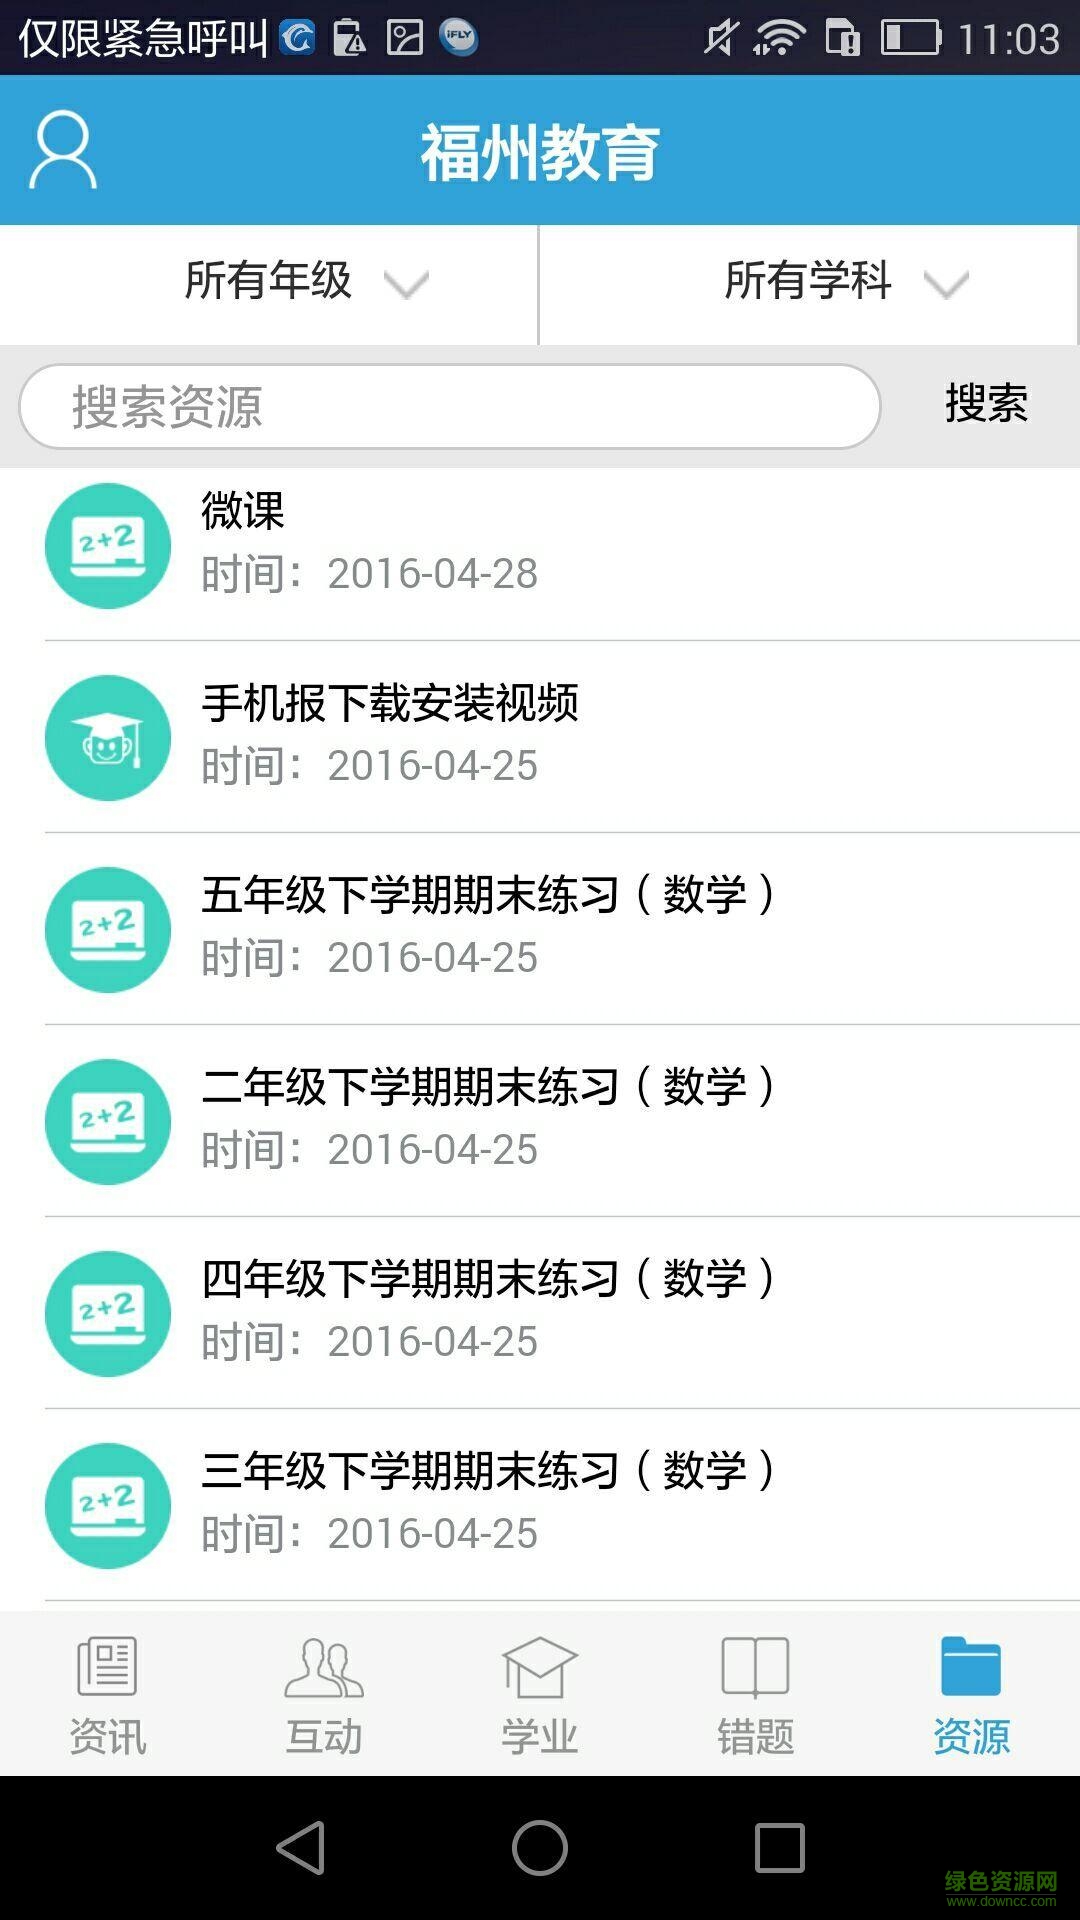 福州教育手机报ios版 v3.7 iphone官方版 2